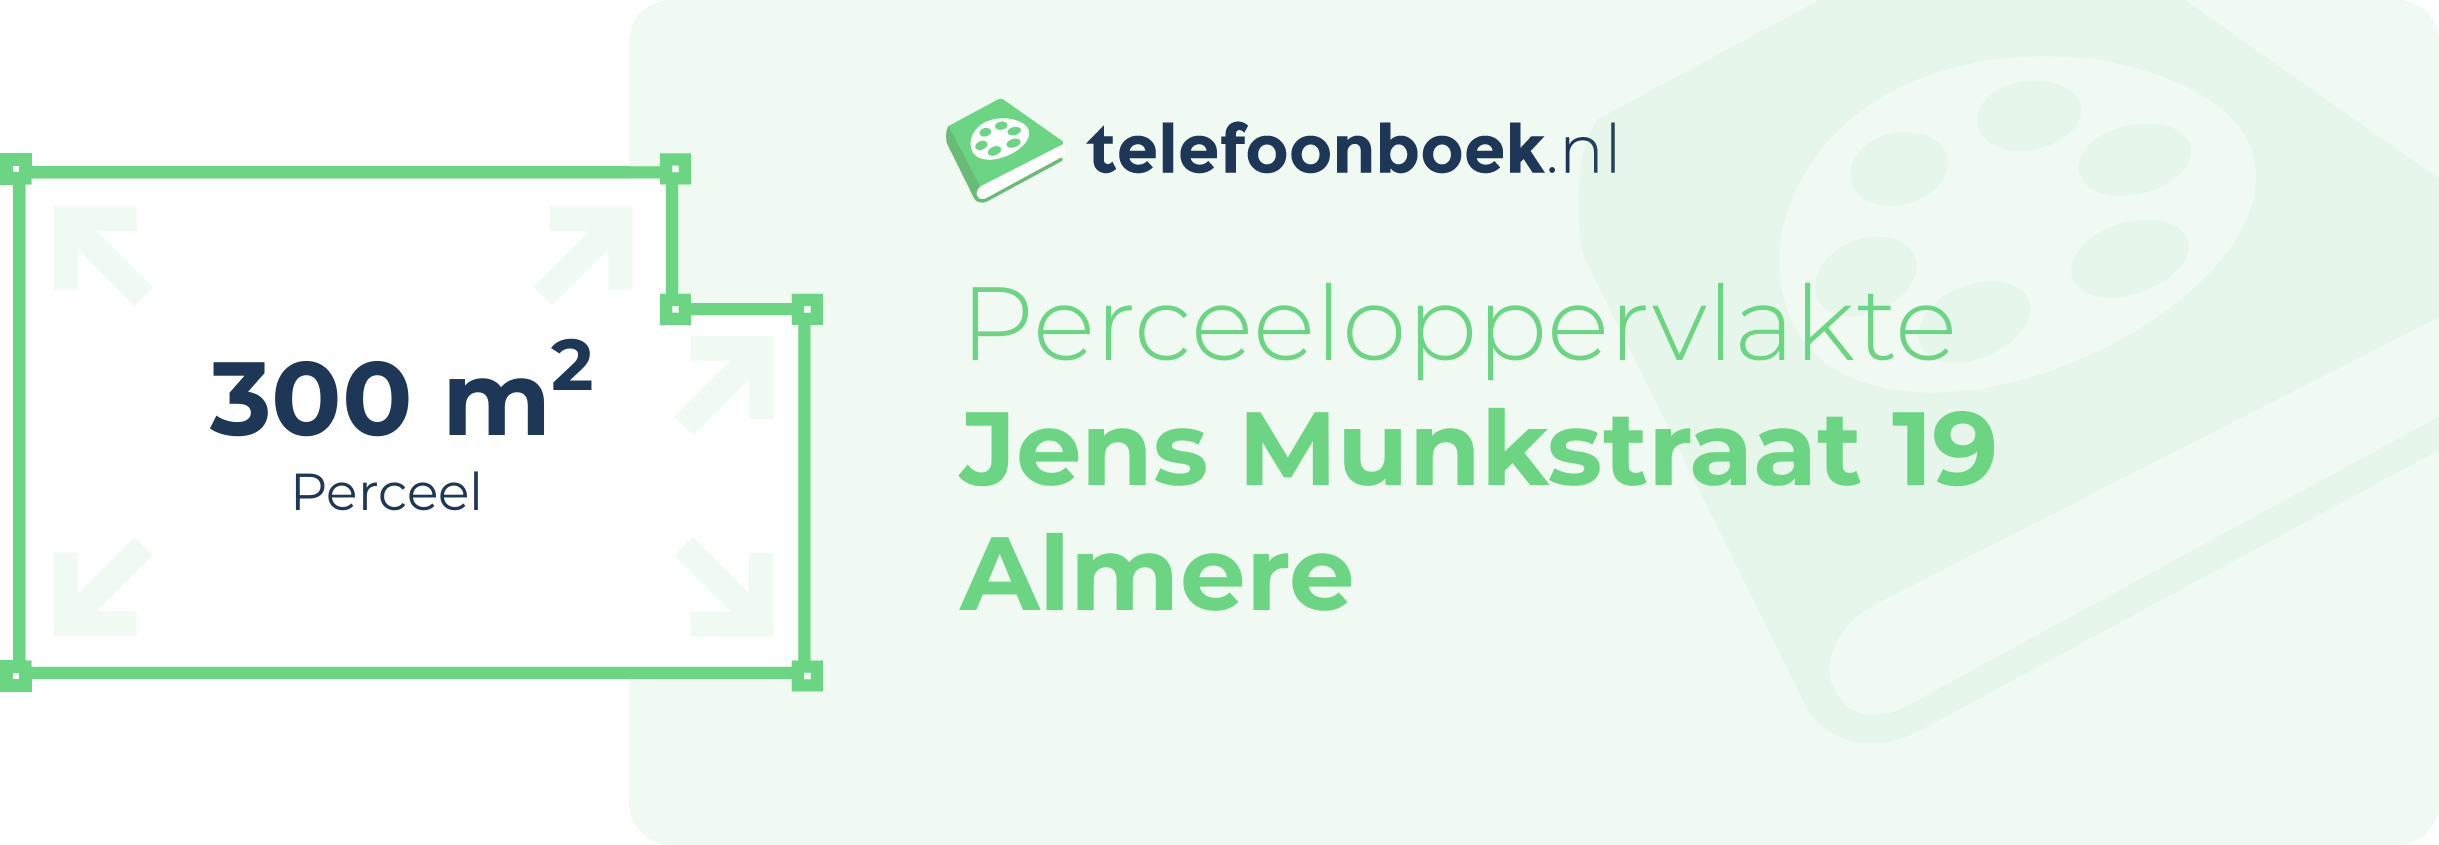 Perceeloppervlakte Jens Munkstraat 19 Almere